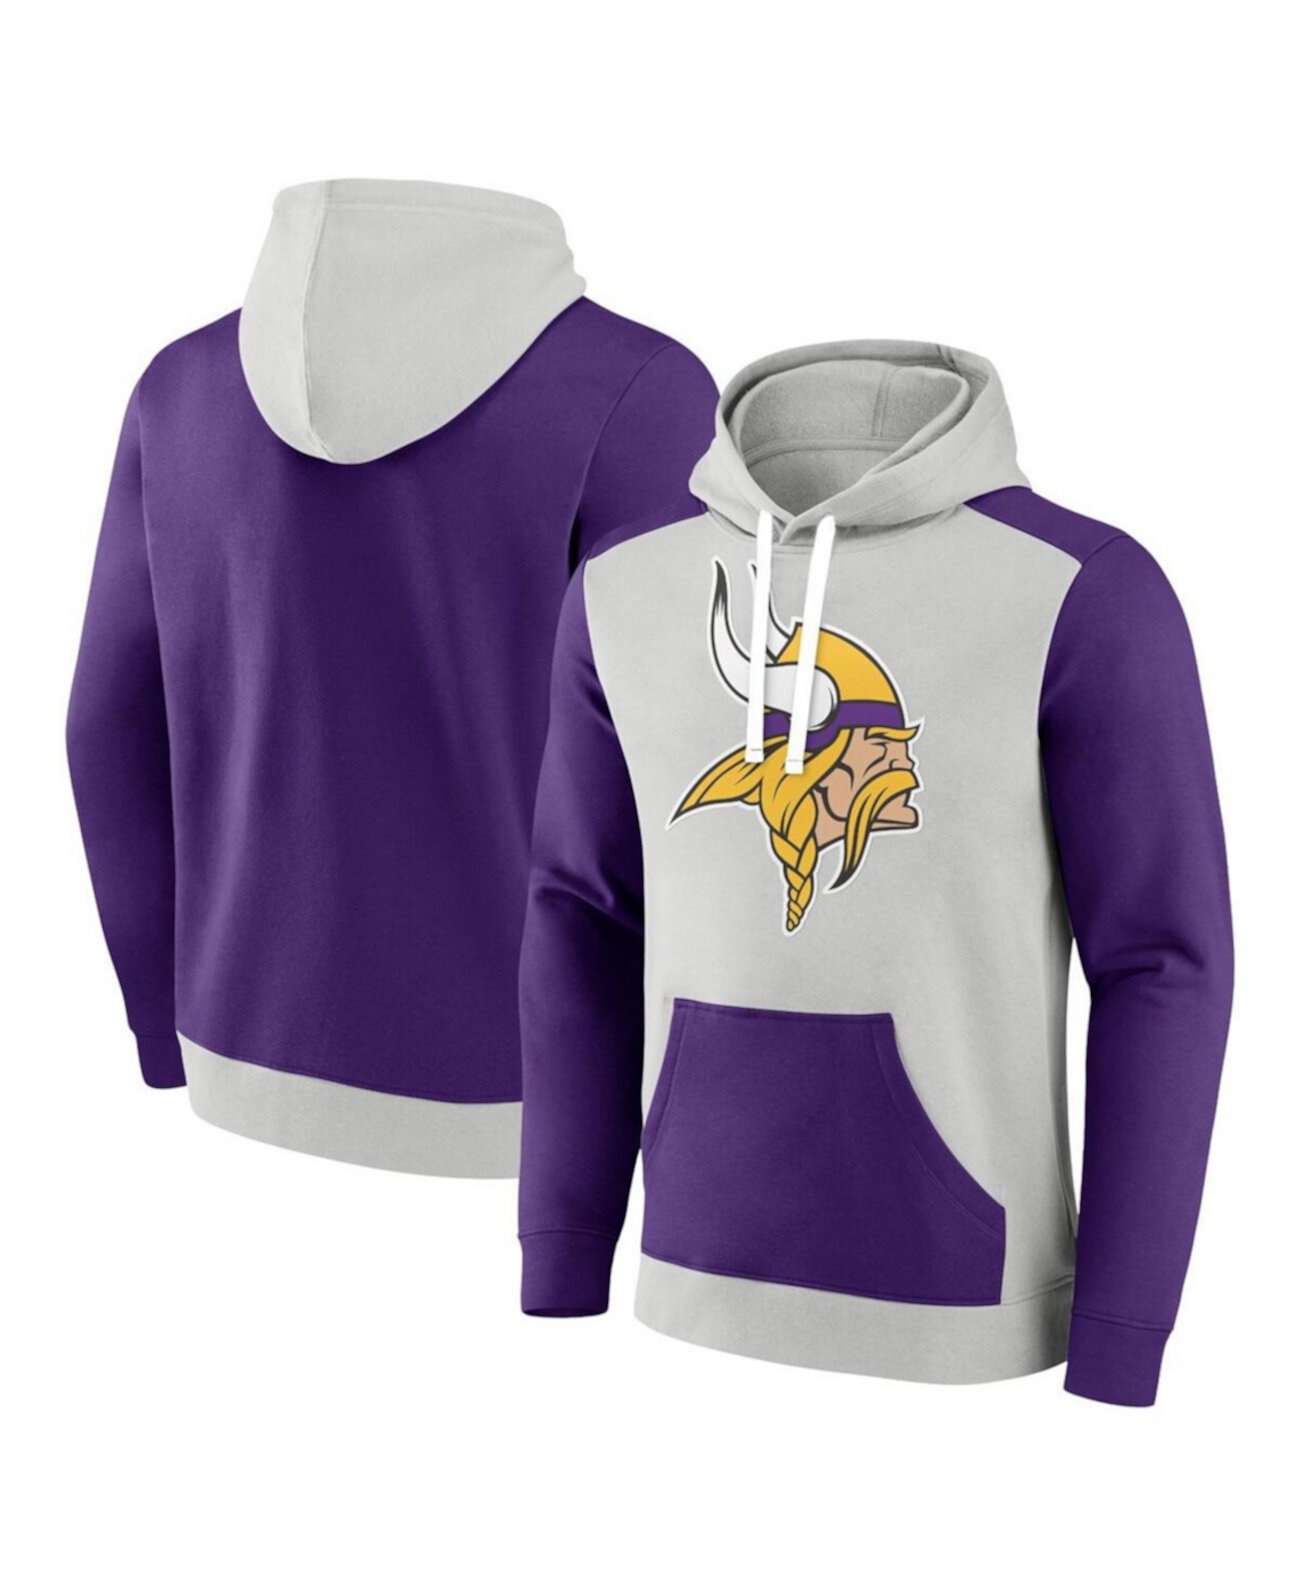 Мужской флисовый пуловер с капюшоном Minnesota Vikings Big and Tall Team серебристого и фиолетового цвета Fanatics